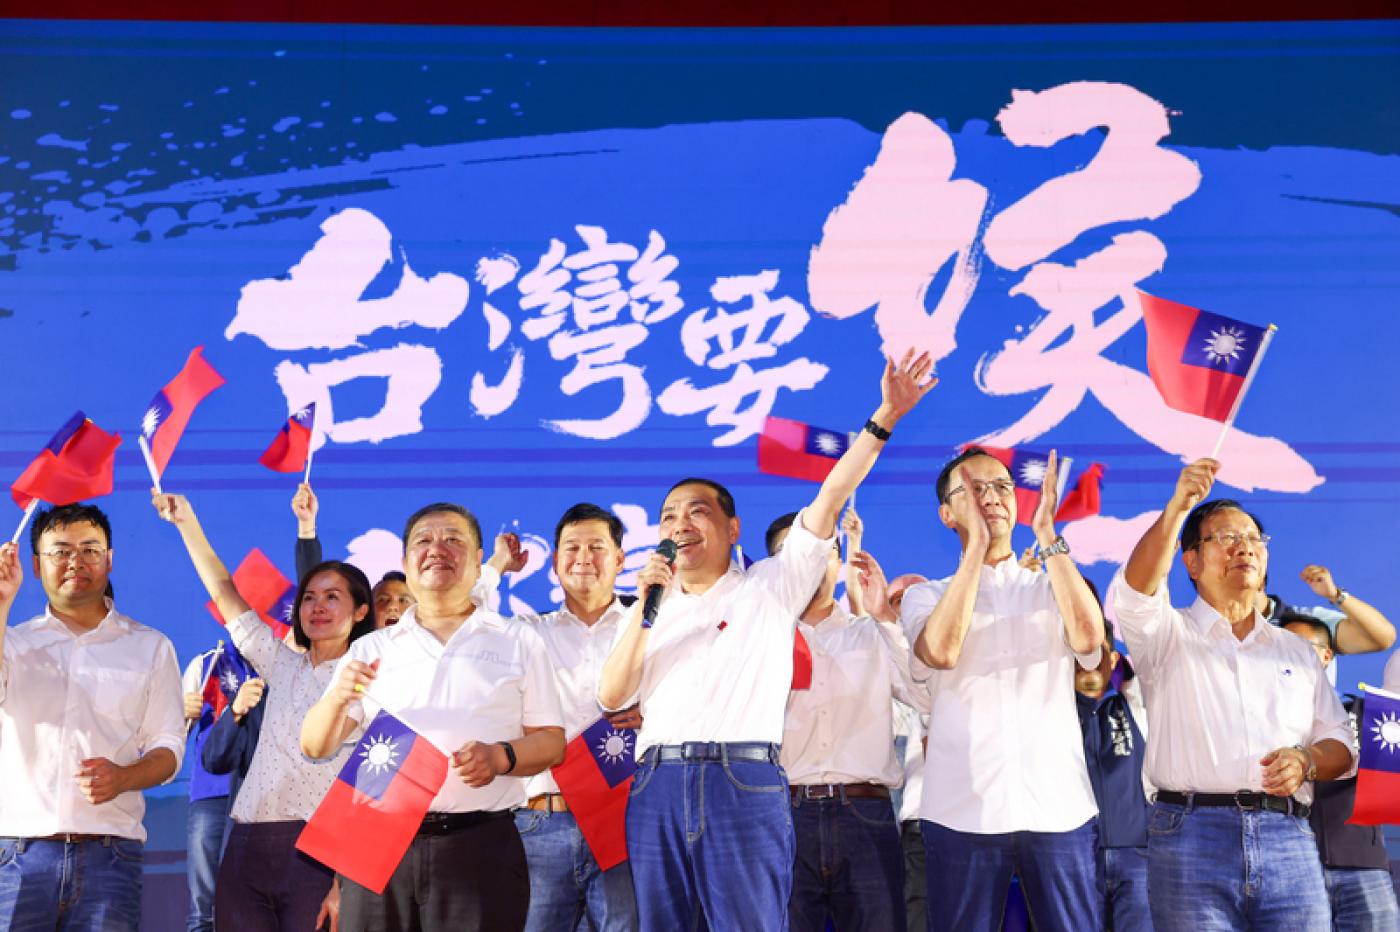 國民黨總統參選人侯友宜(右3)出席在新北市的造勢活動。中央社